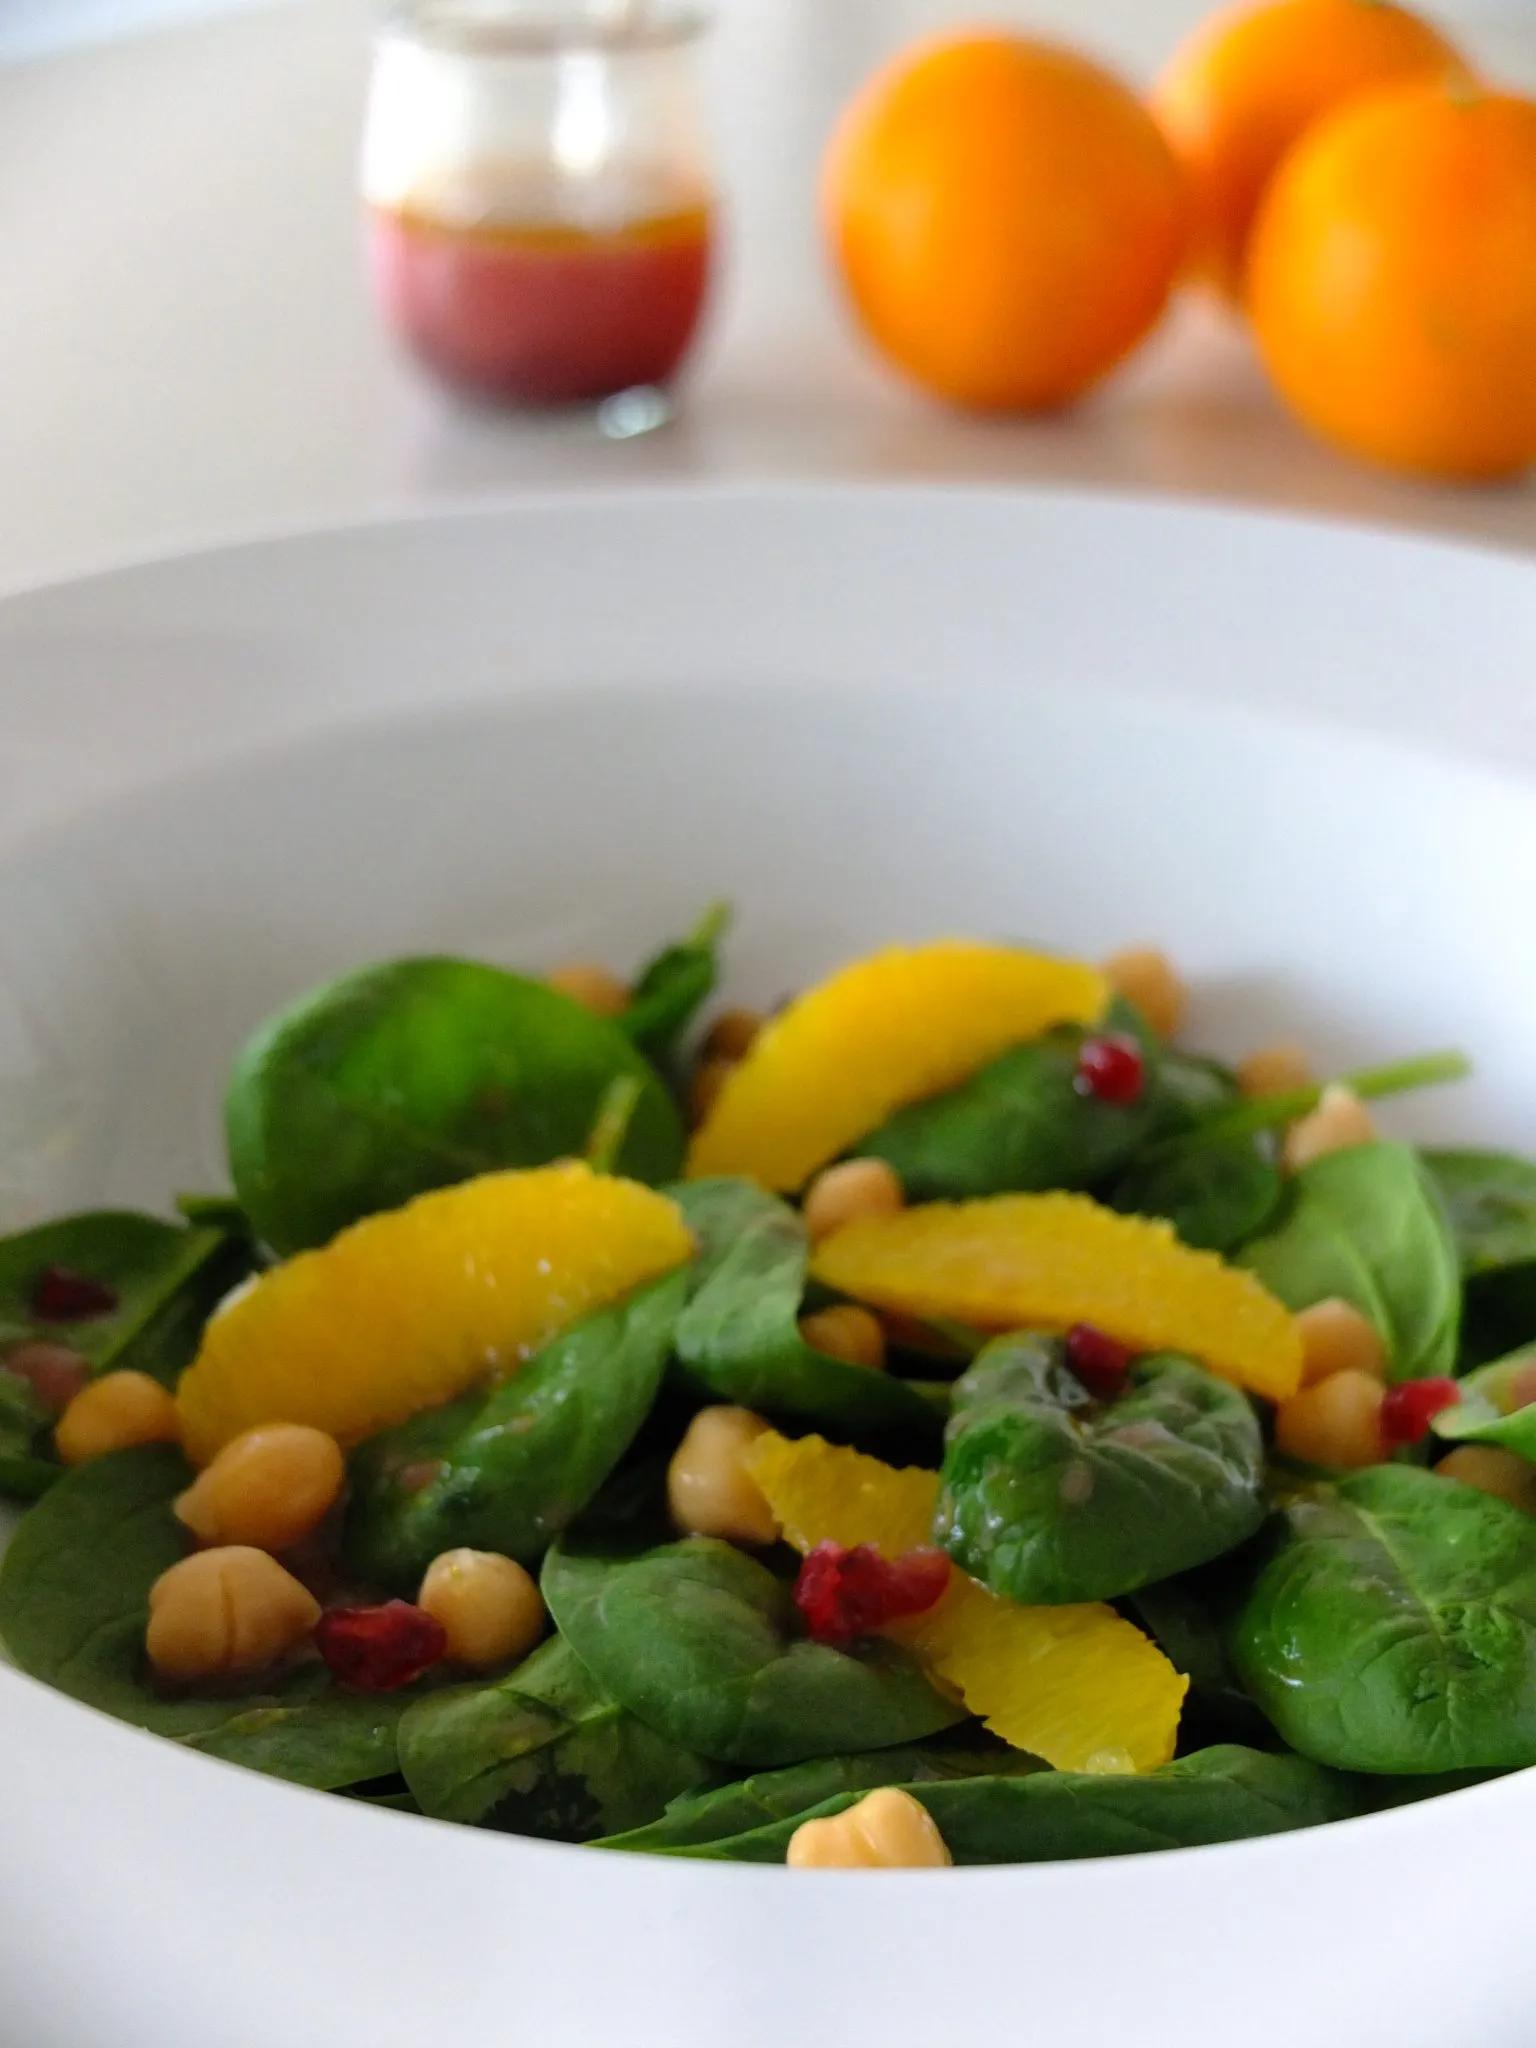 Babyspinat-Salat mit Kichererbsen und Orangen-Preiselbeer-Dressing ...